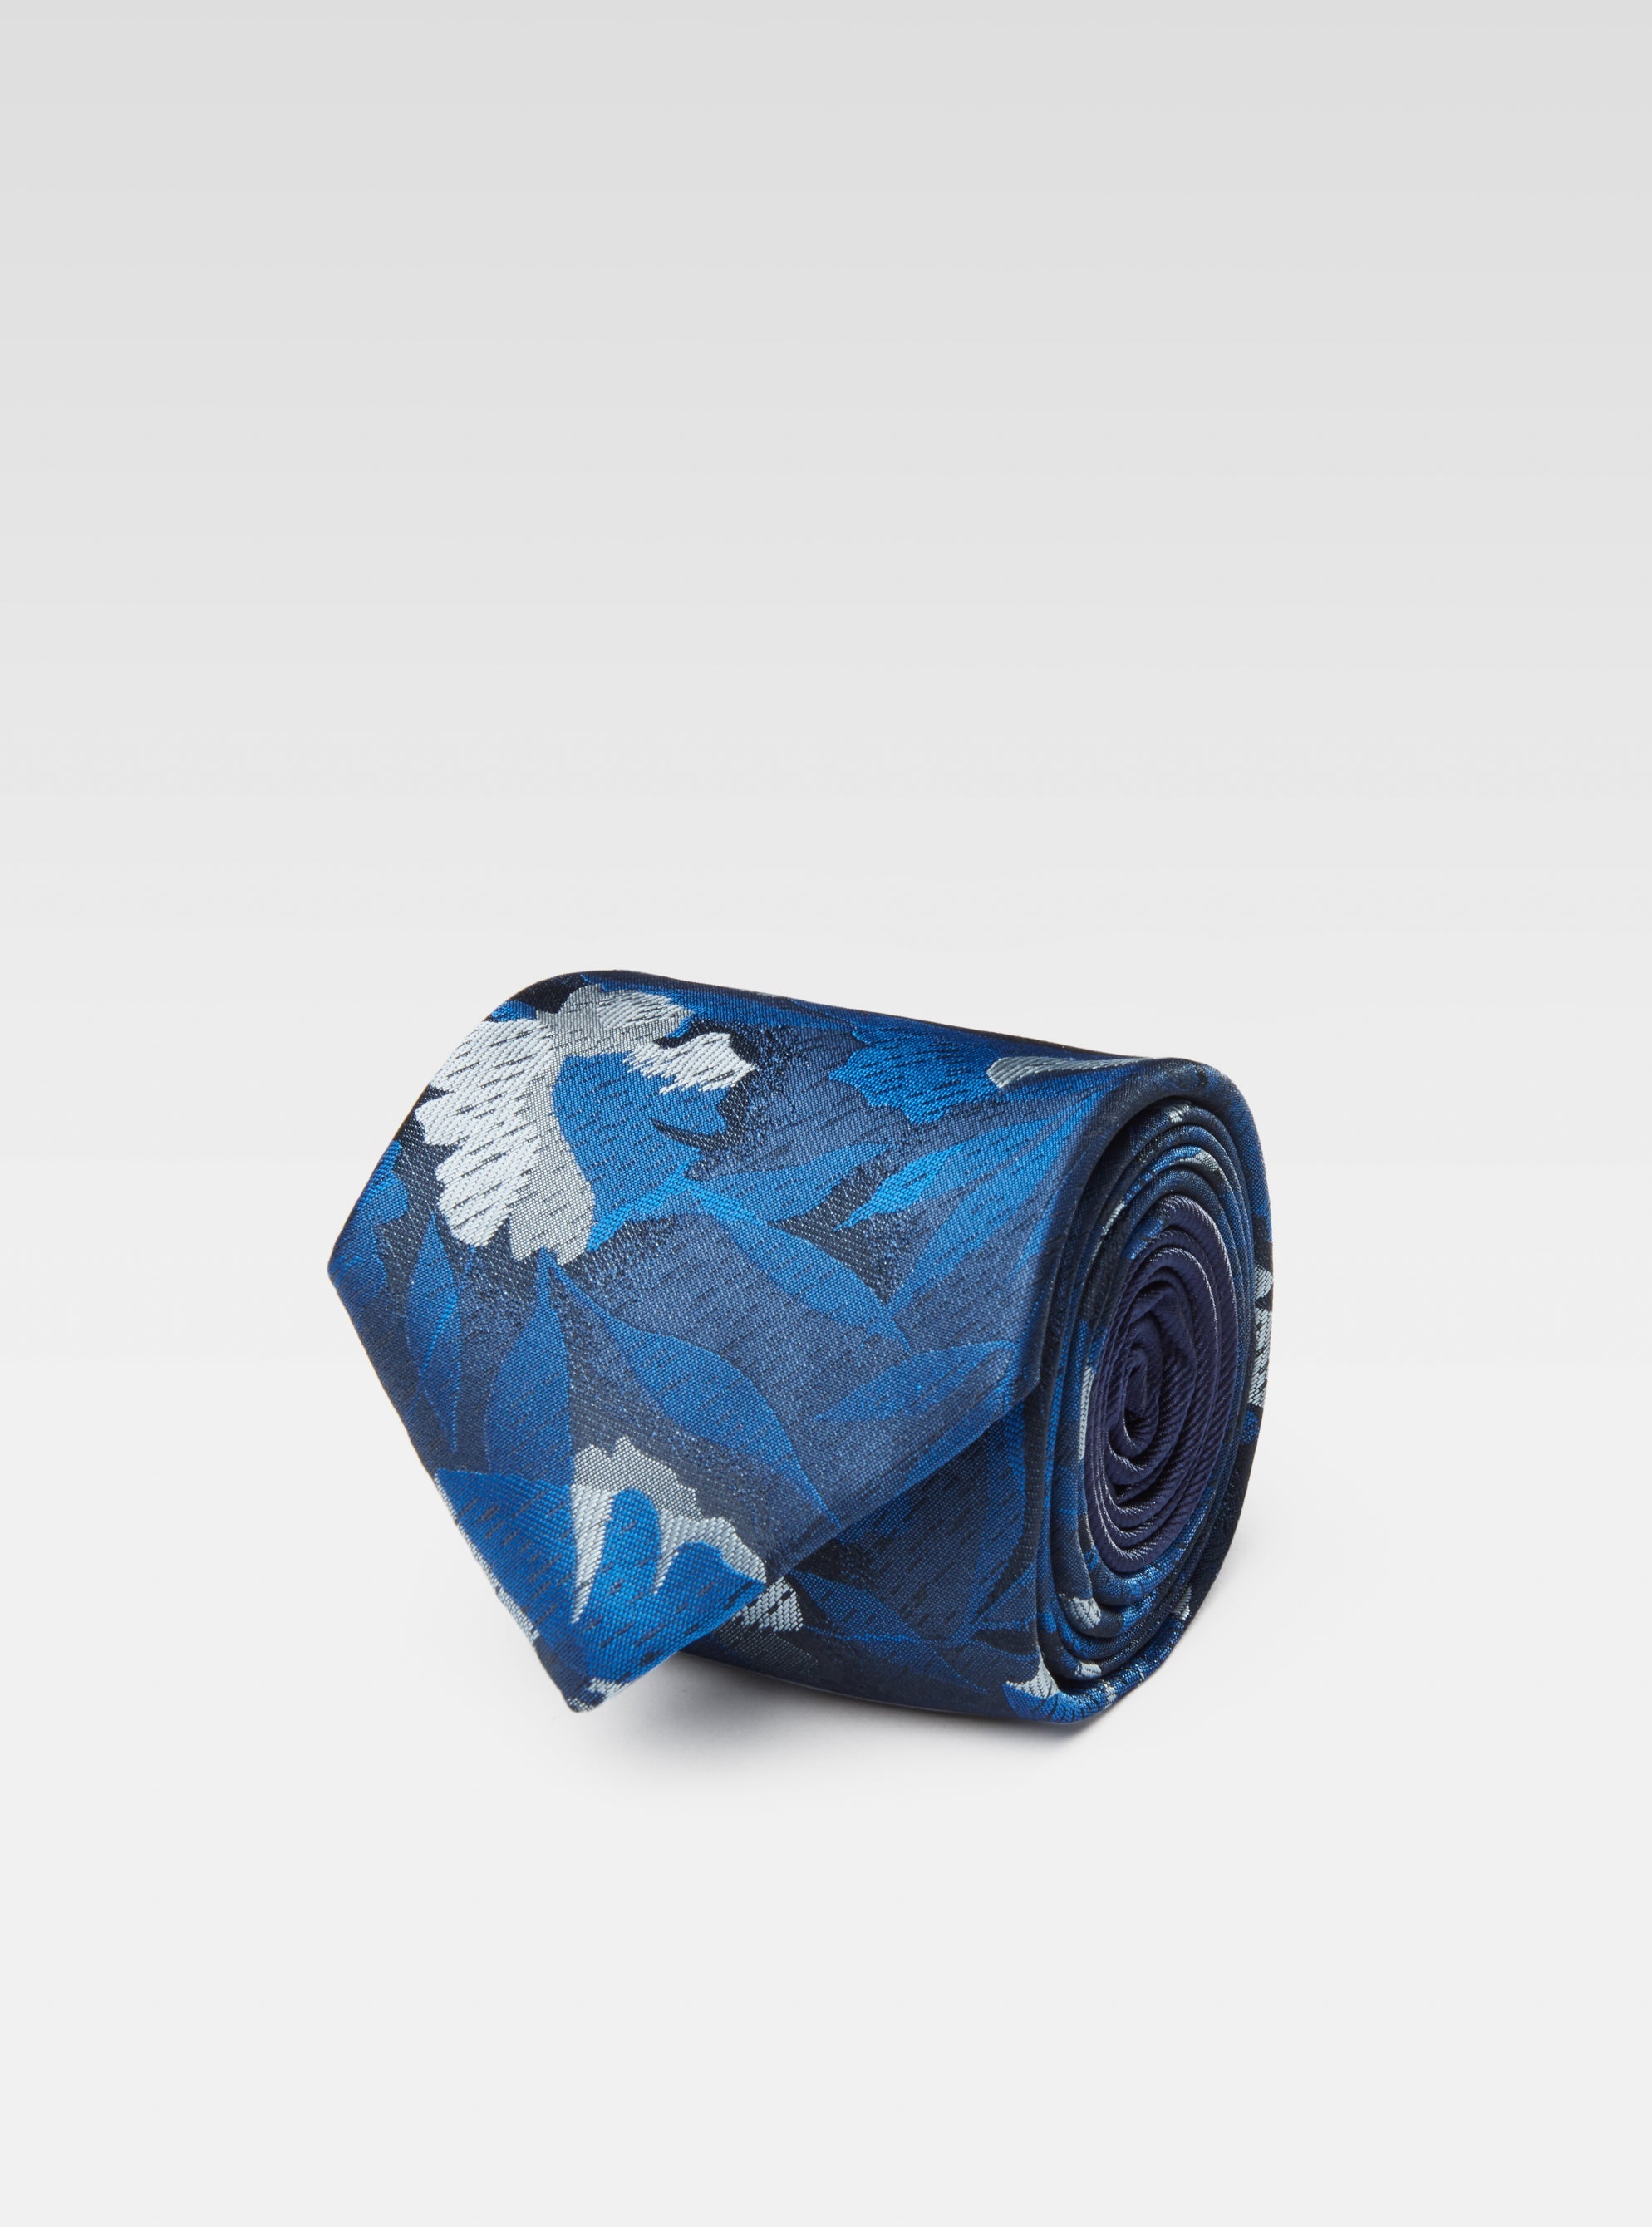 Blue floral tie